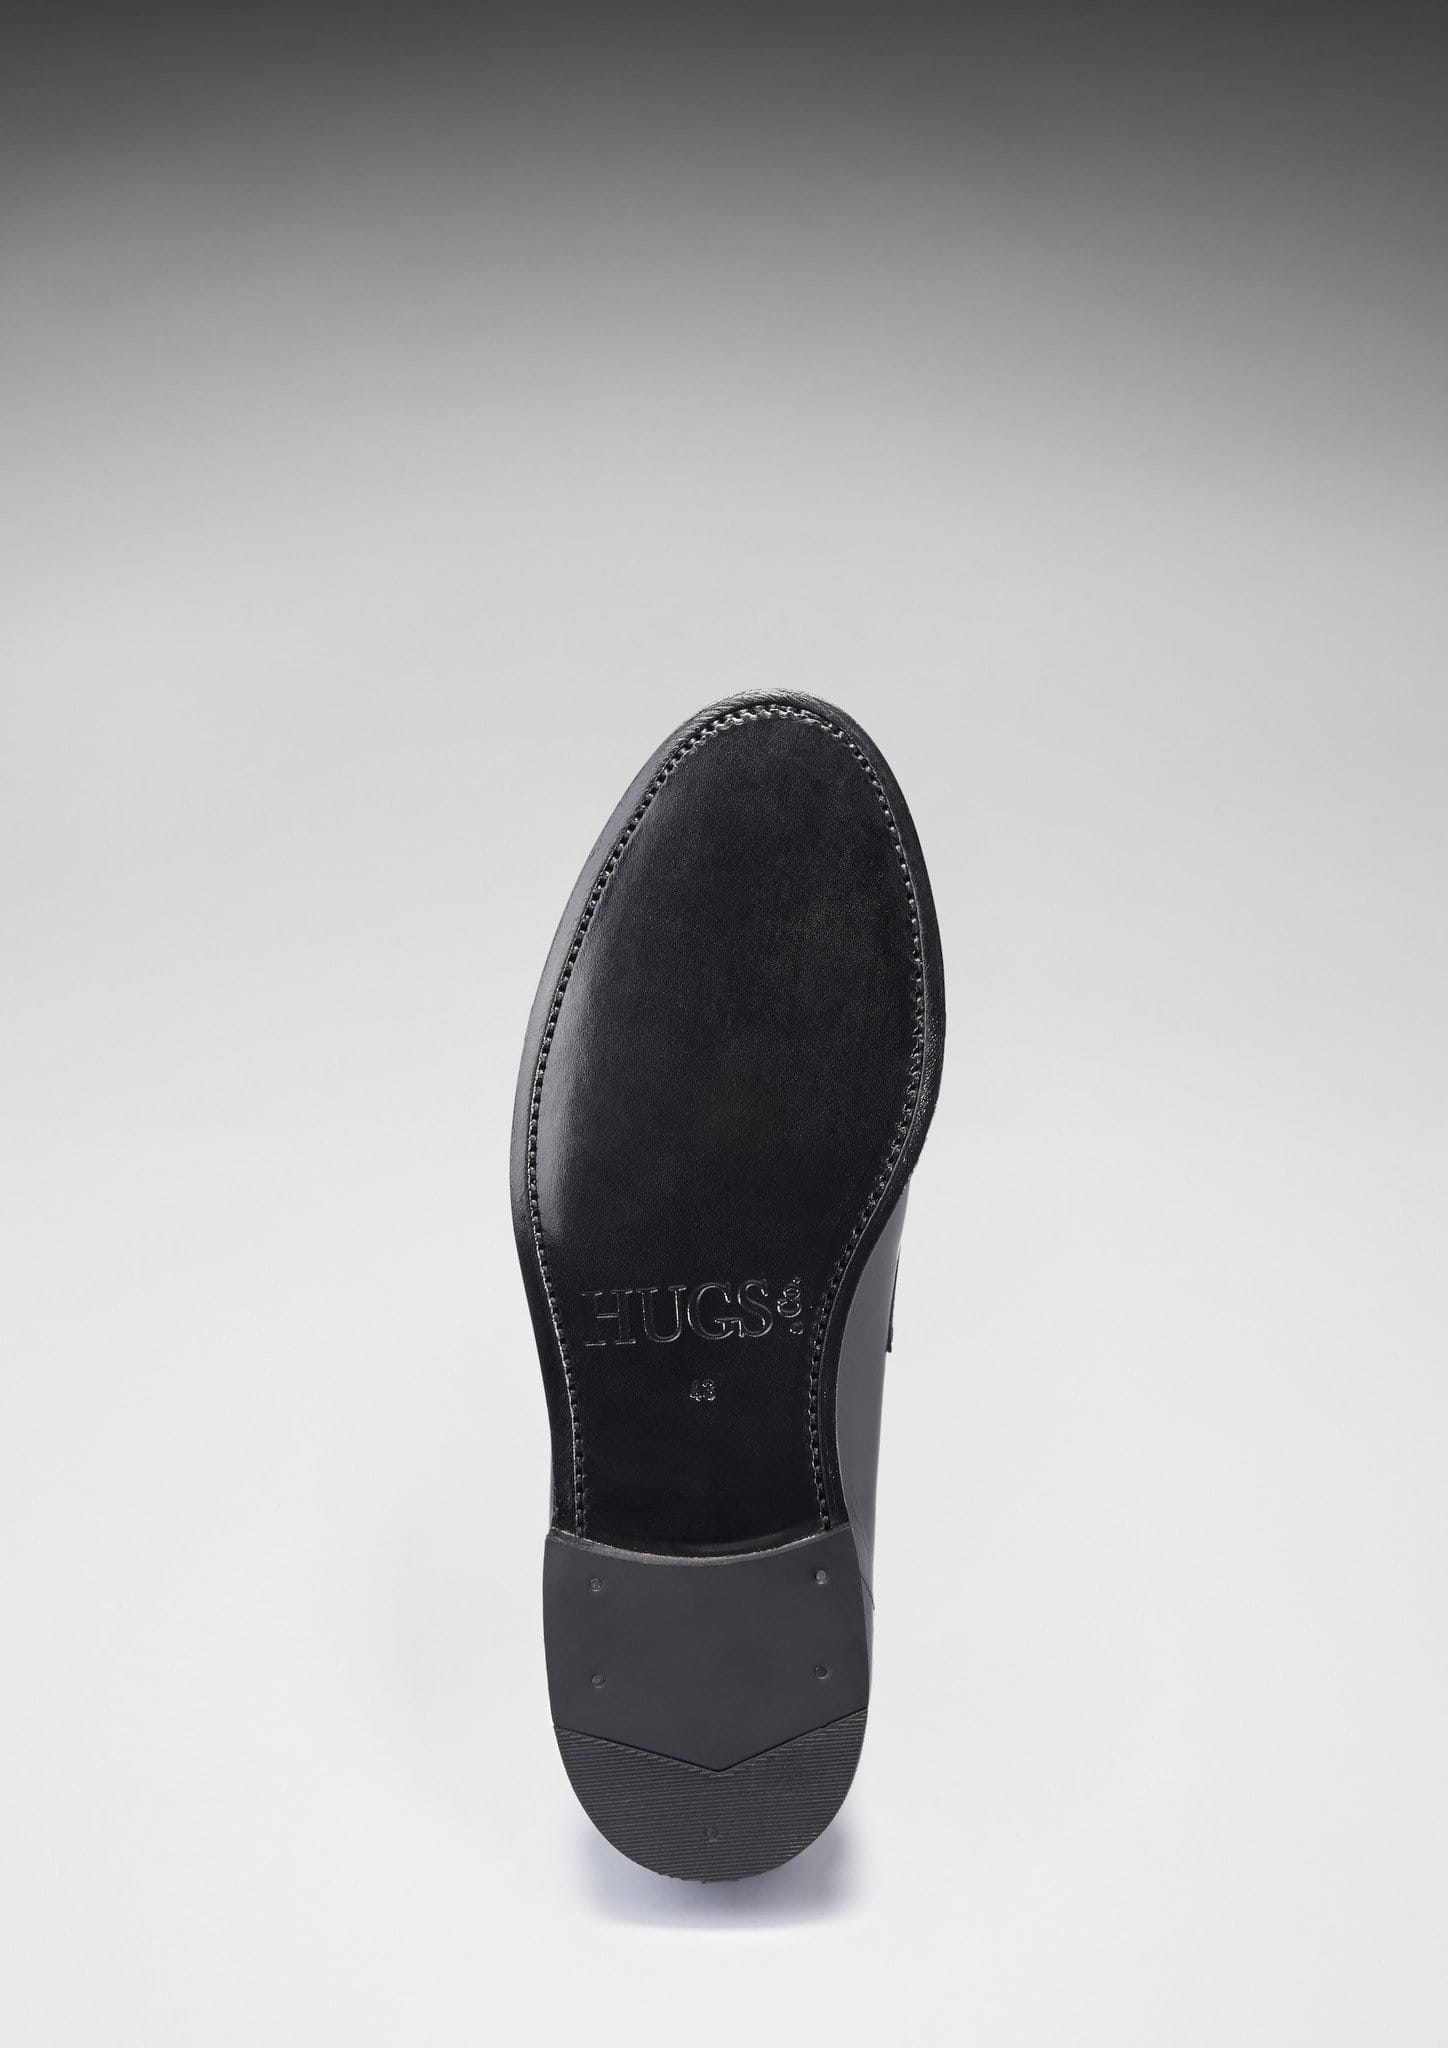 Schwarze Leder-Loafer, rahmengenähte Ledersohle